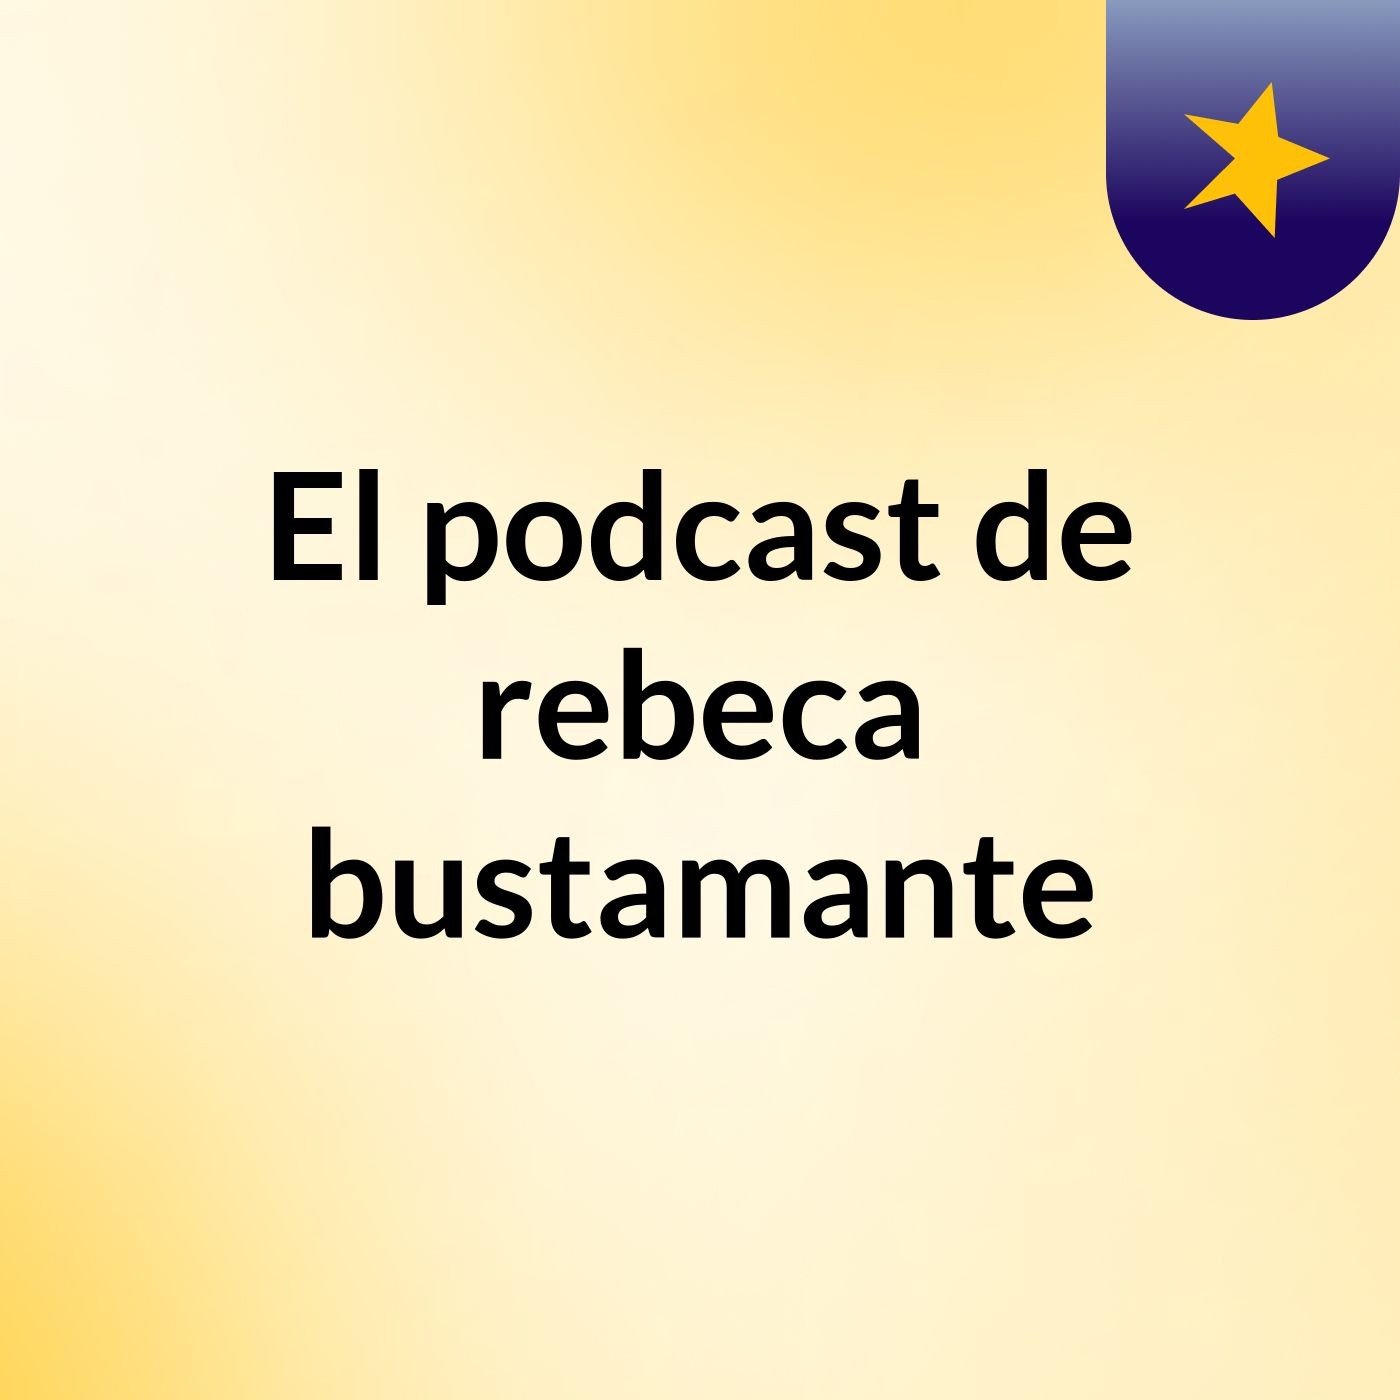 Episodio 2 - El podcast de rebeca bustamante